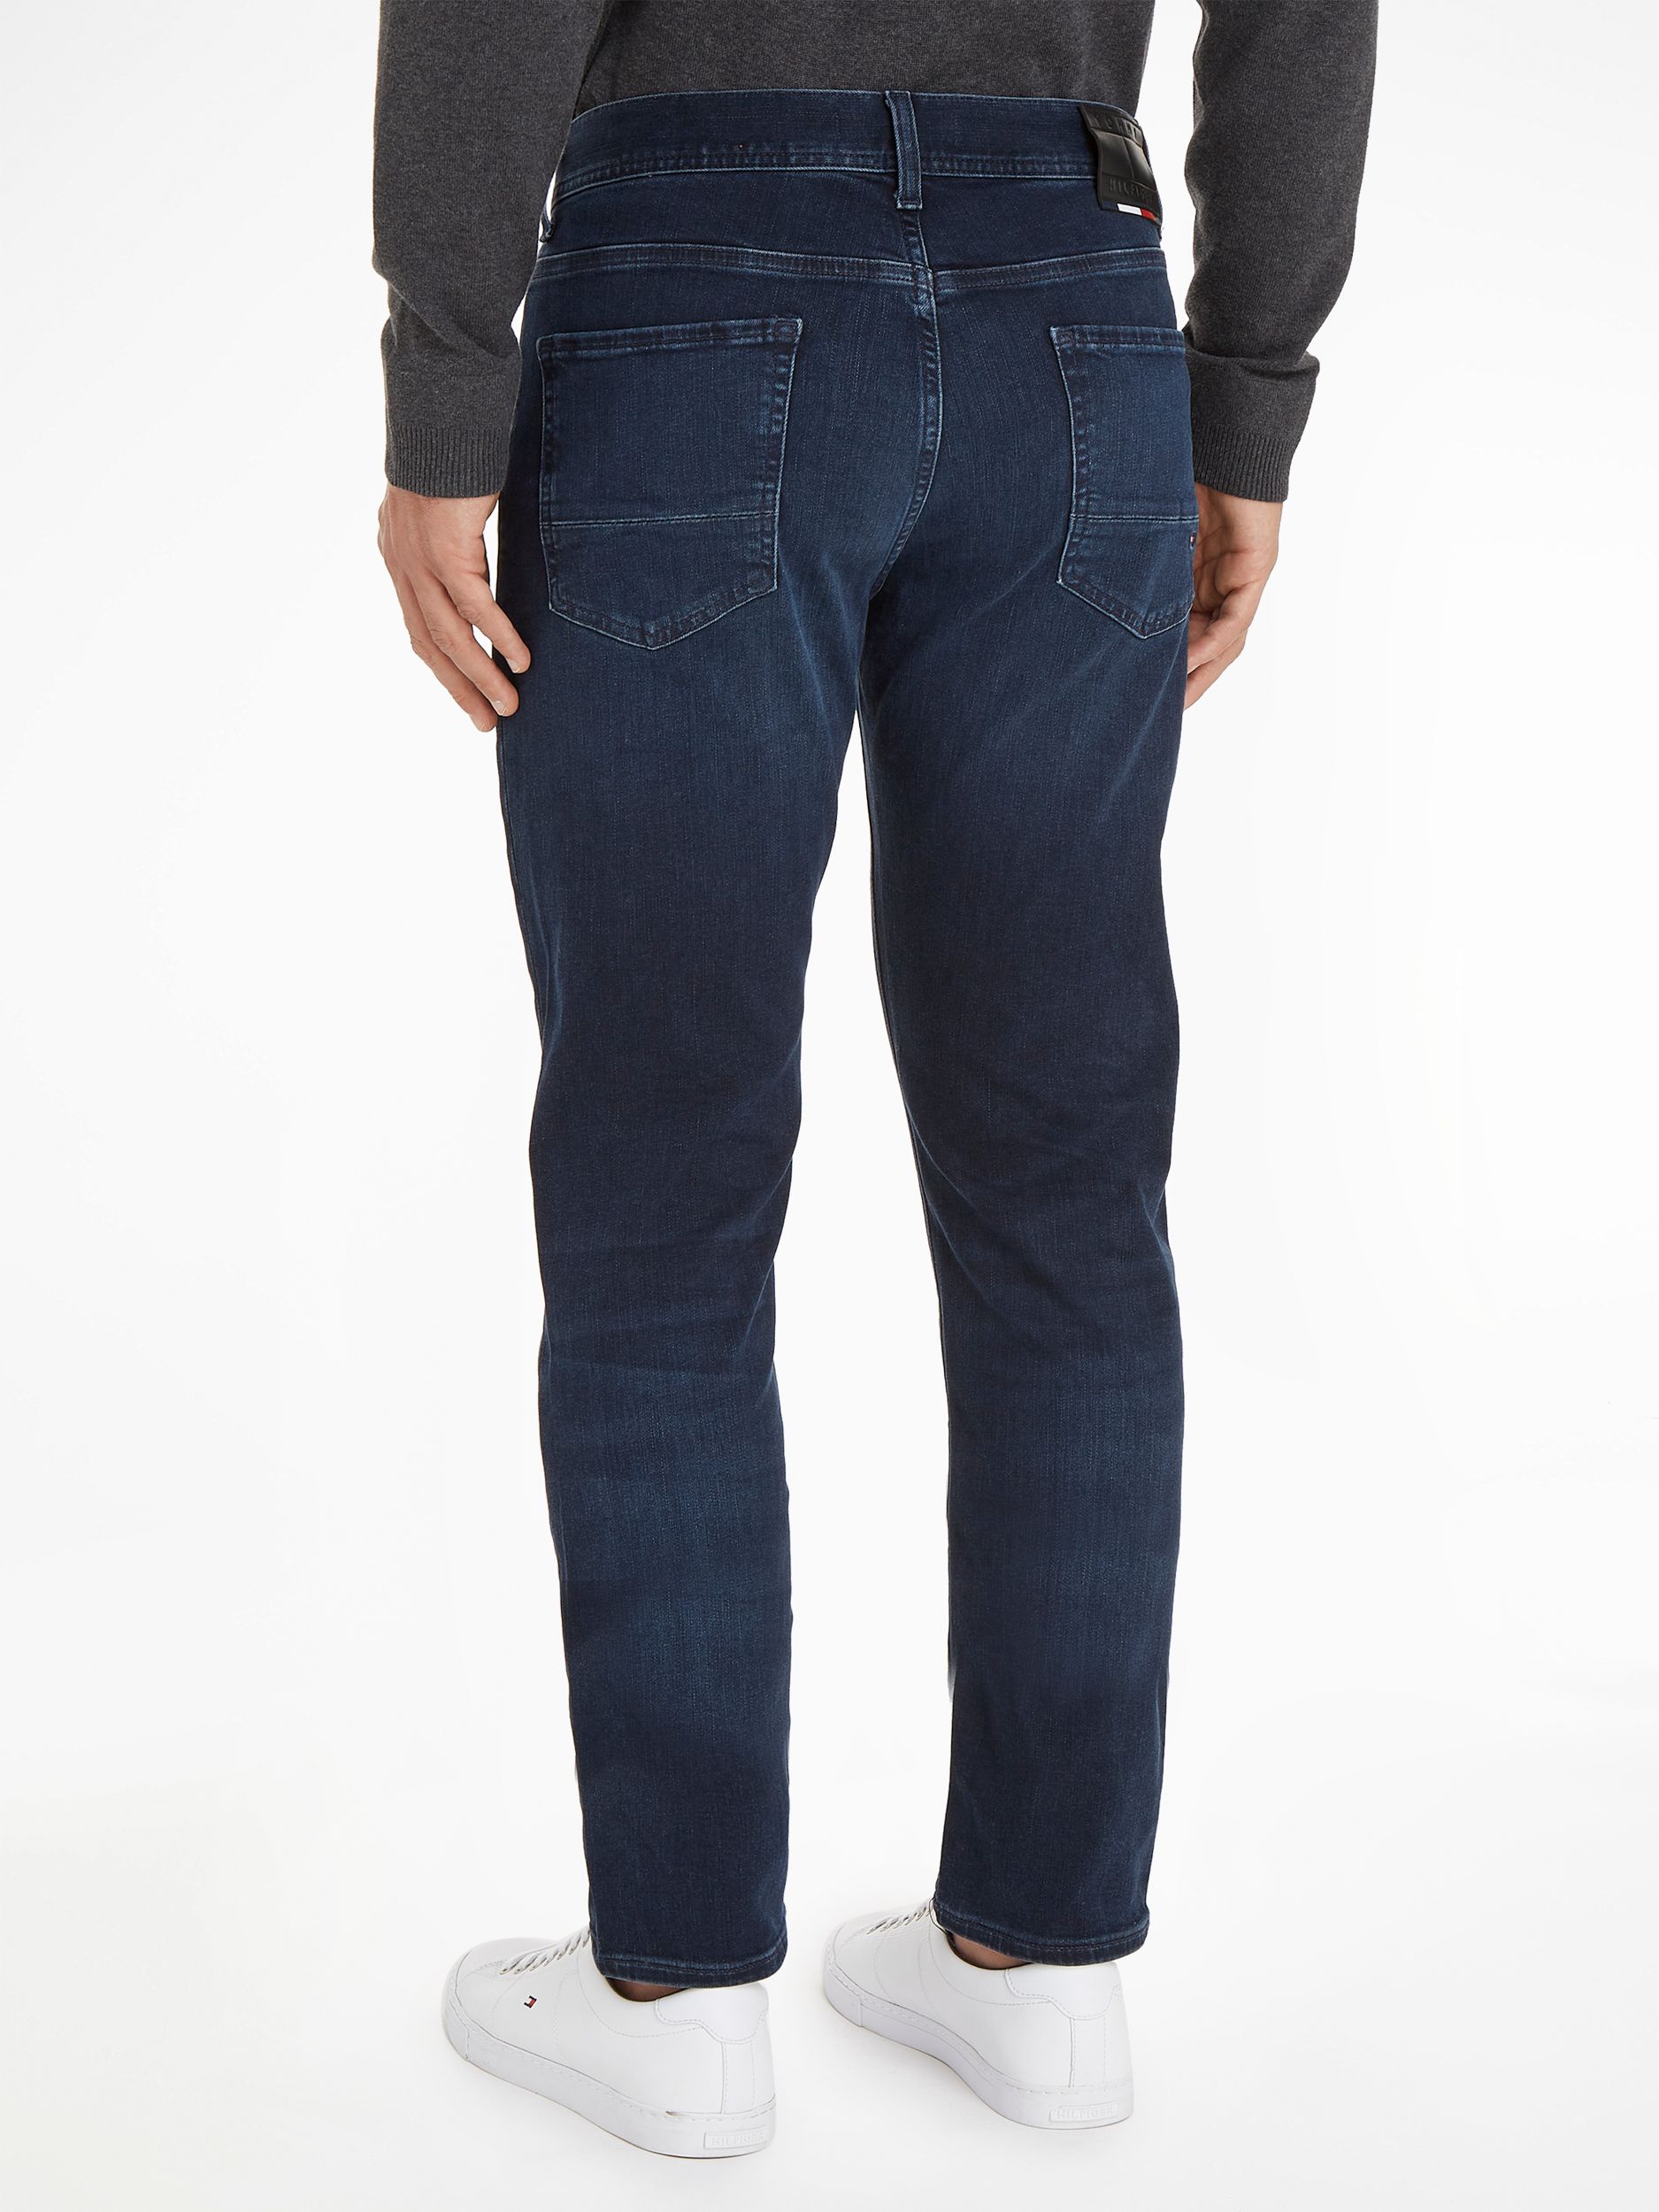 Tommy Hilfiger Menswear Jeans Blauw 071258-001-28/32